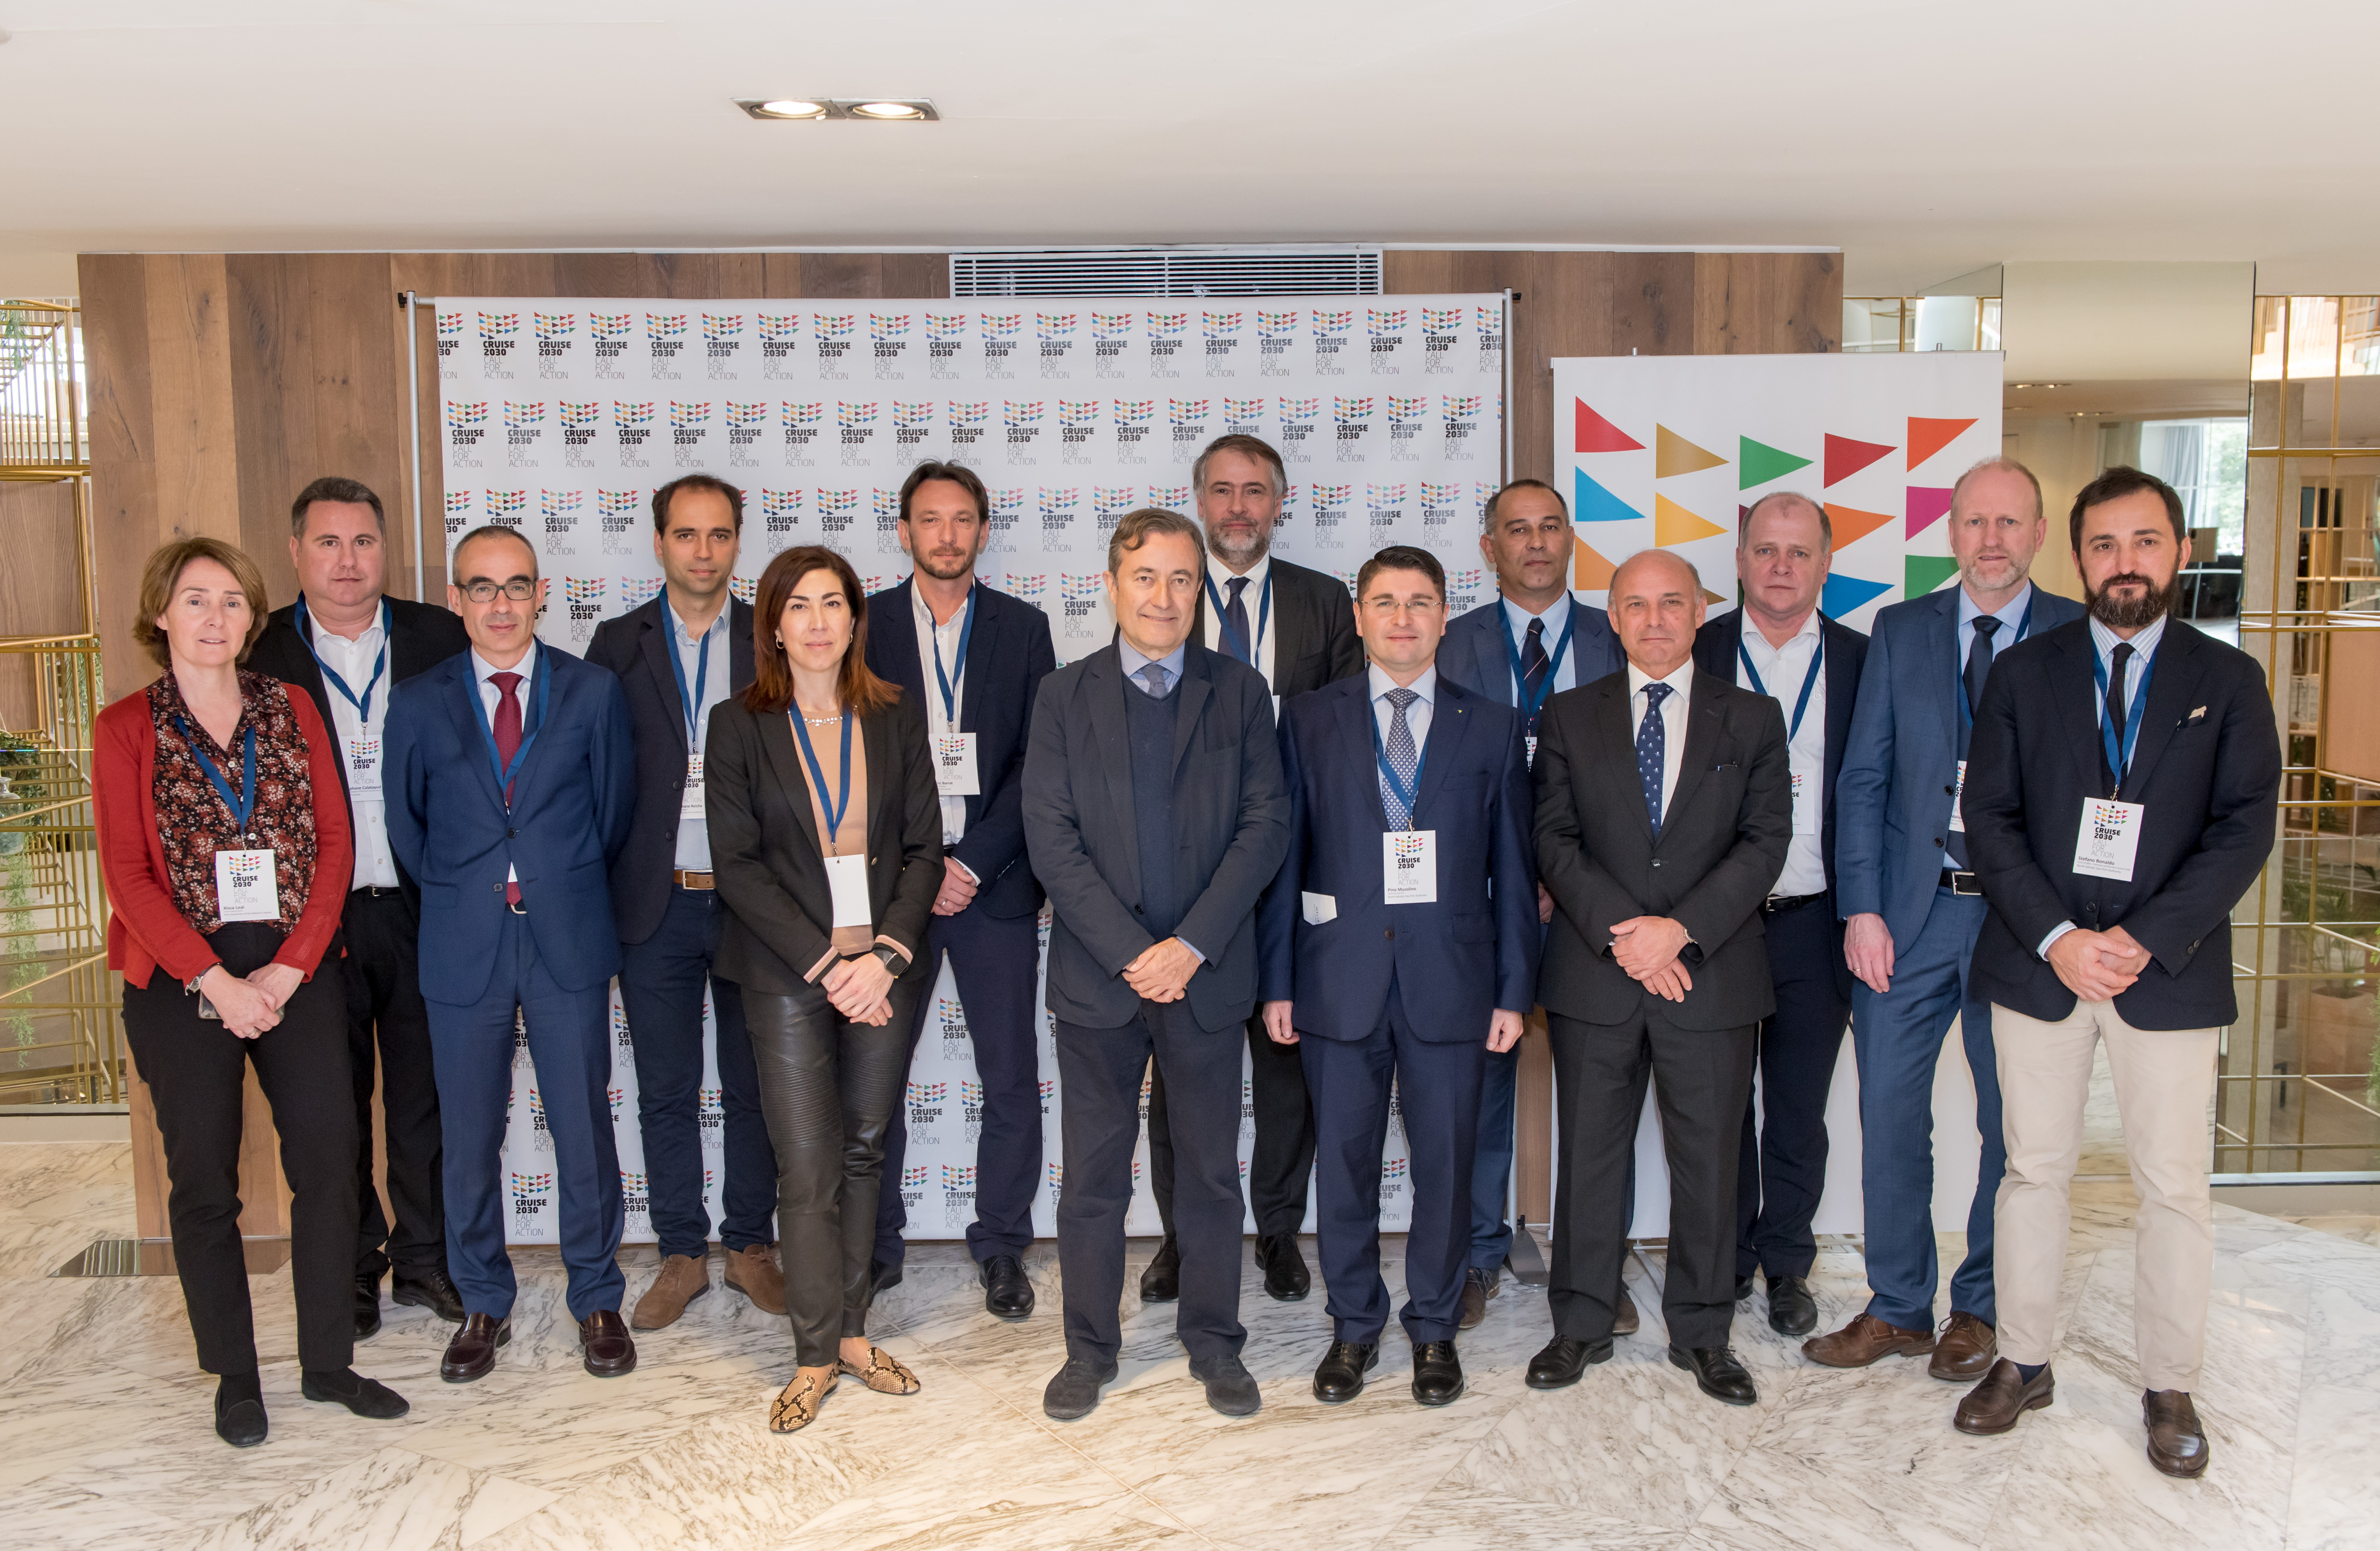 Cruise 2030: el Grup de Treball es compromet a trobar el millor equilibri possible entre les companyies de creuers, destinacions i ports per garantir el futur de la indústria de creuers a Europa. La propera reunió se celebrarà a Cannes al juny de 2020